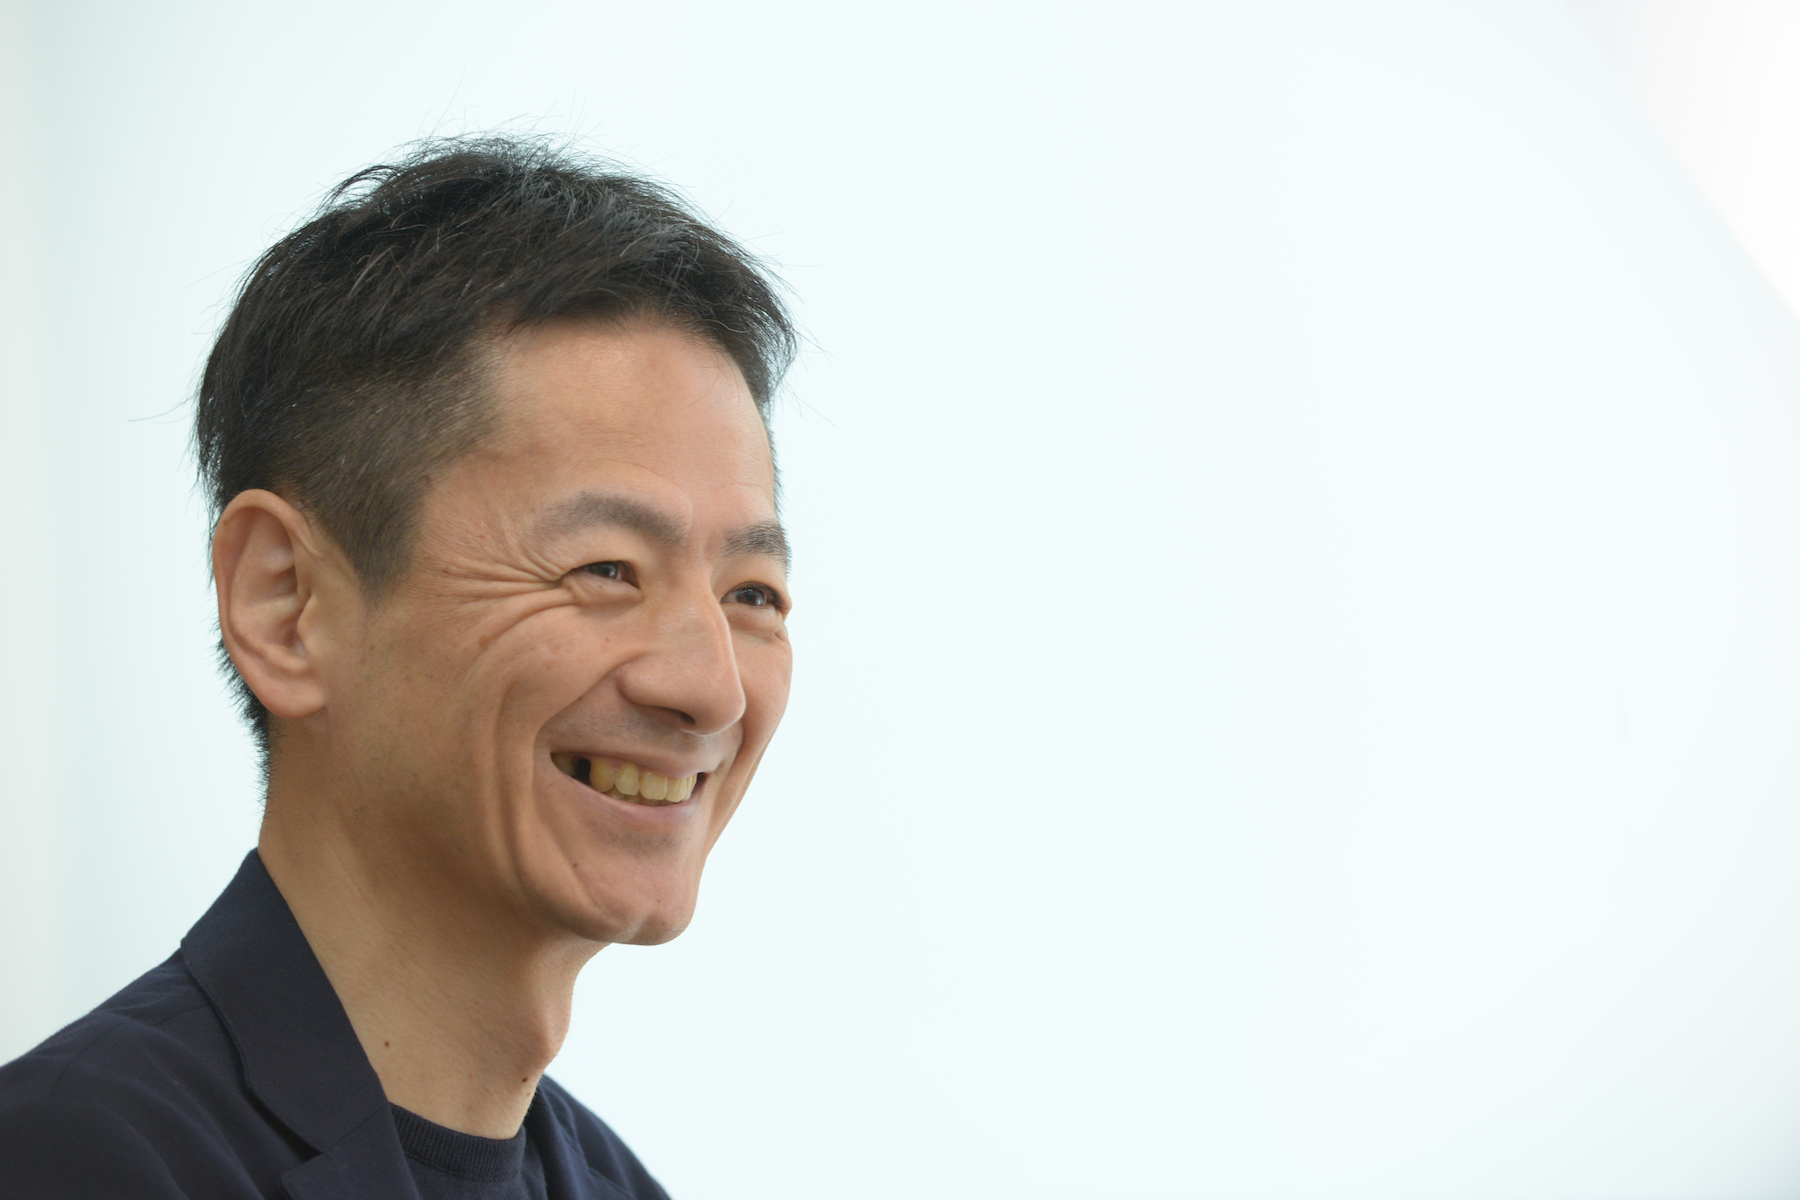 代表取締役　田中 宏彰
「“体験”をアップデートして社会に貢献する」をミッションに、2011年に同社を設立。